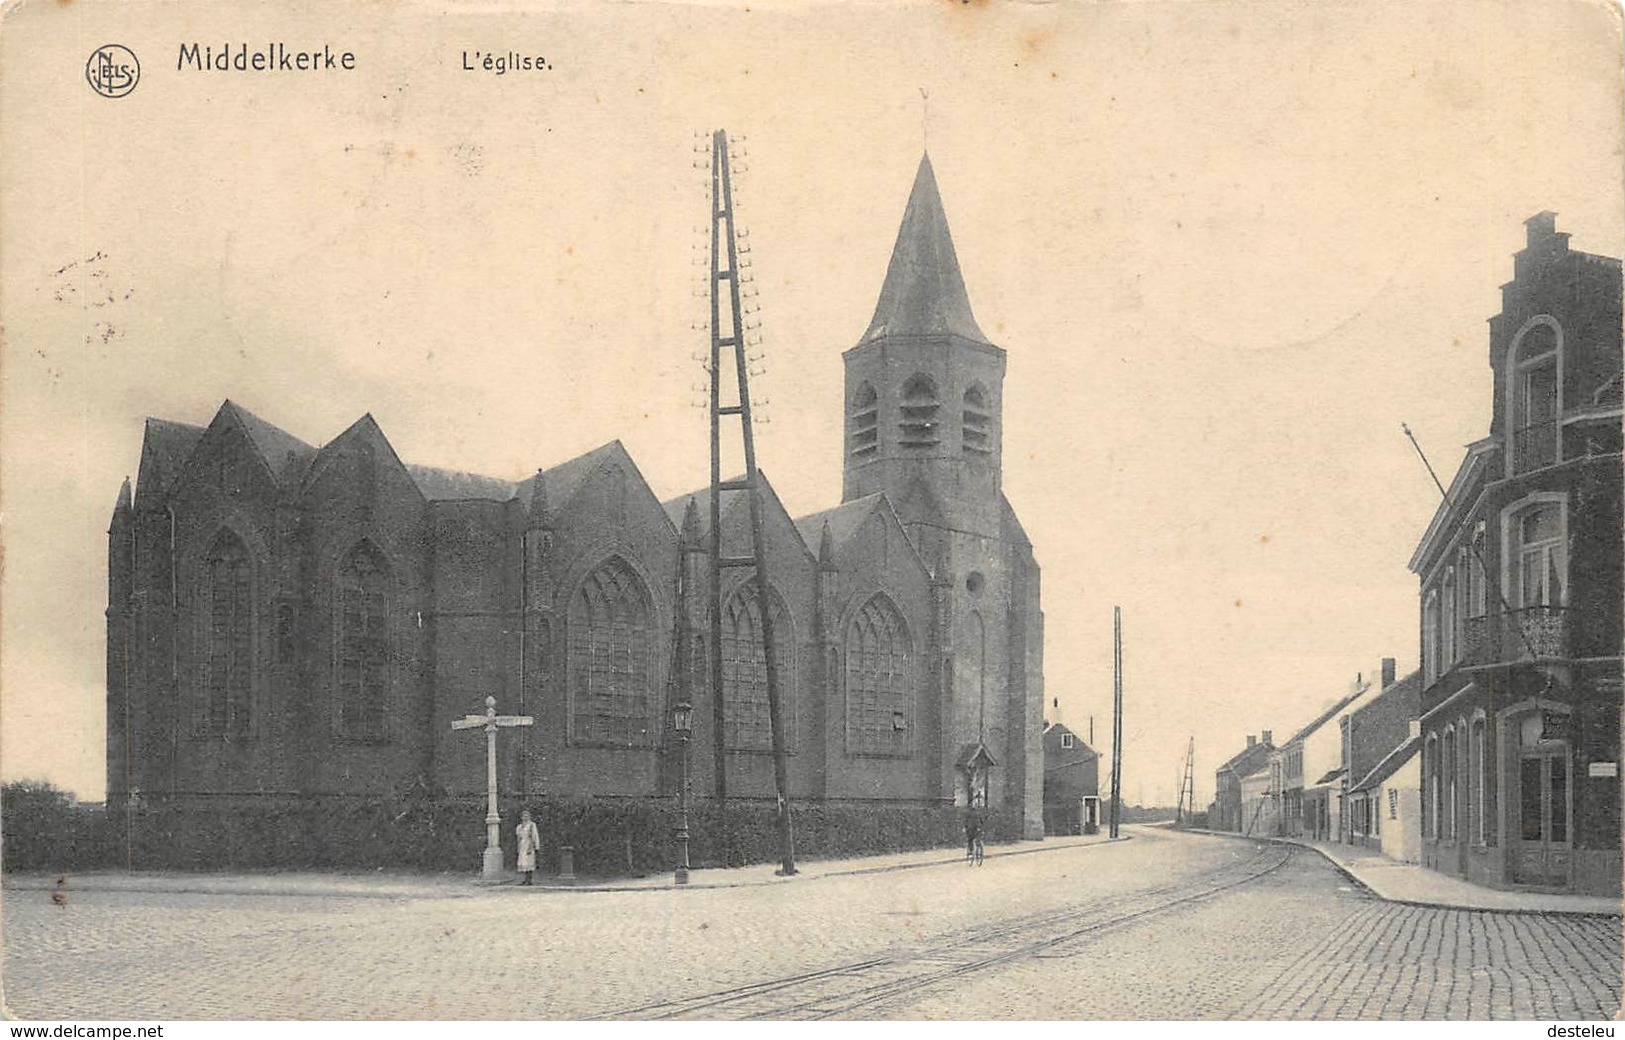 L'église NELS Middelkerke - Middelkerke